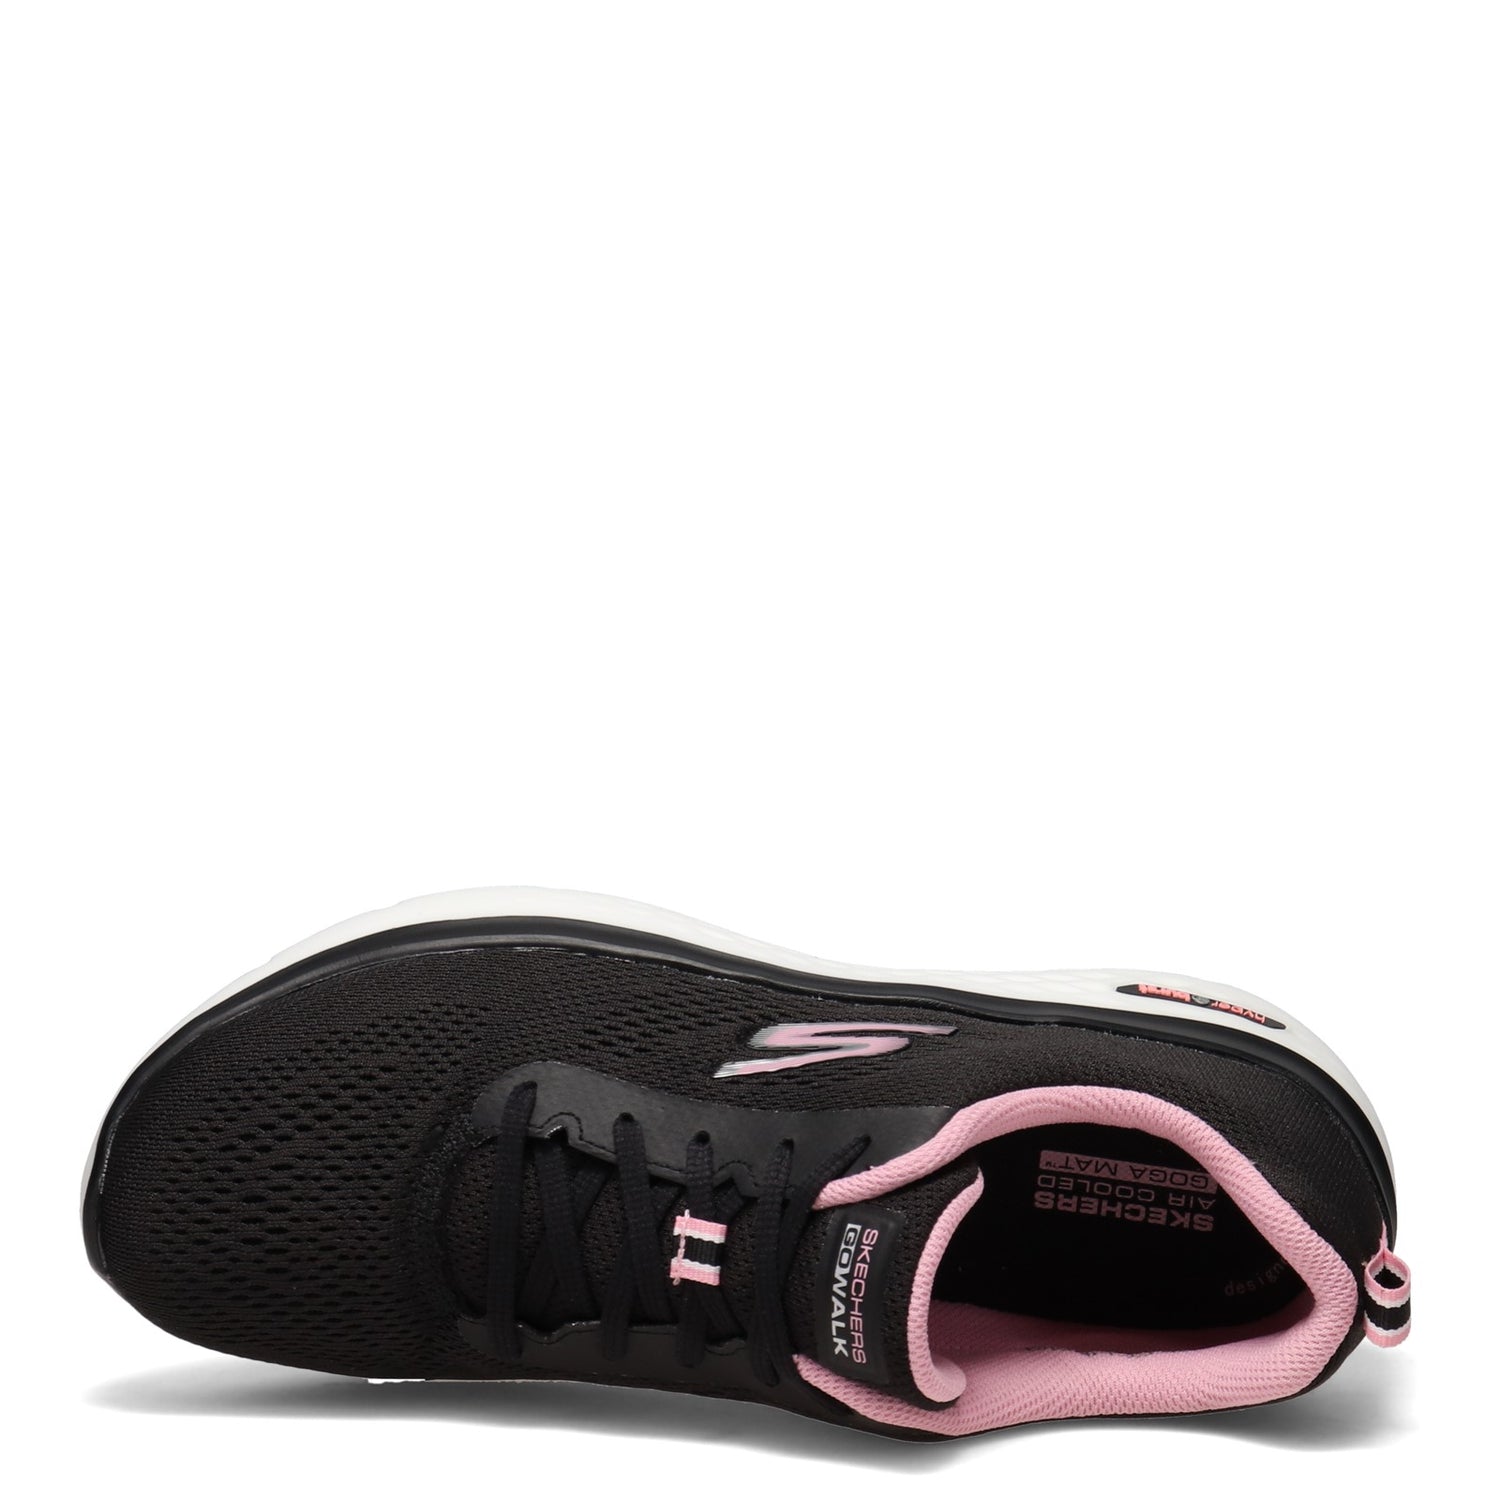 Peltz Shoes  Women's Skechers GOwalk Hyper Burst Walking Shoe BLACK PINK 124578-BKPK